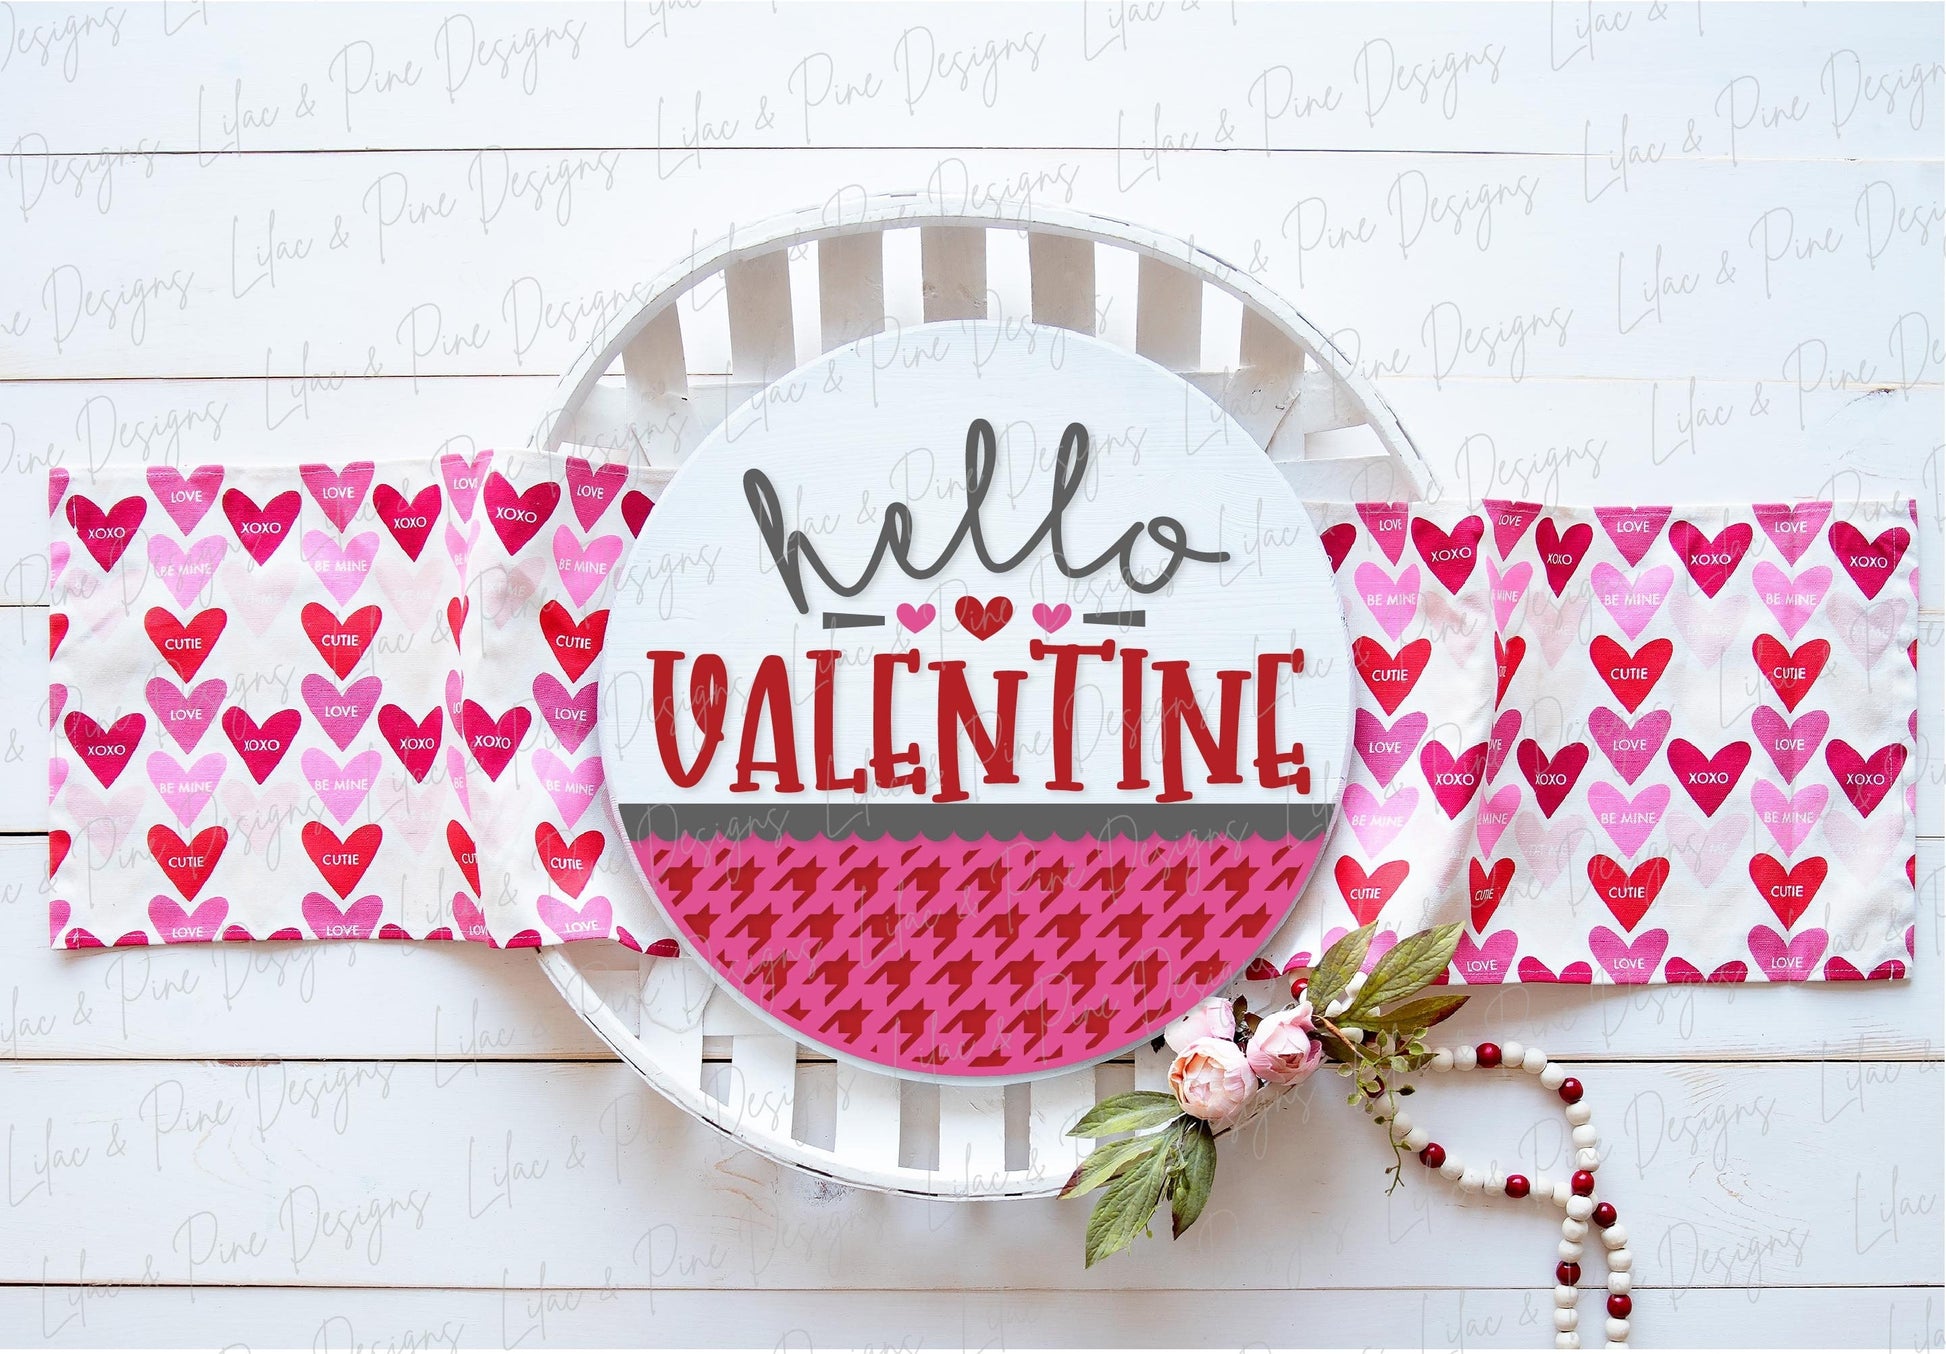 Hello Valentine sign SVG, Valentine door hanger, Valentines Welcome sign SVG, Valentines Day decor, Glowforge SVG, laser cut file